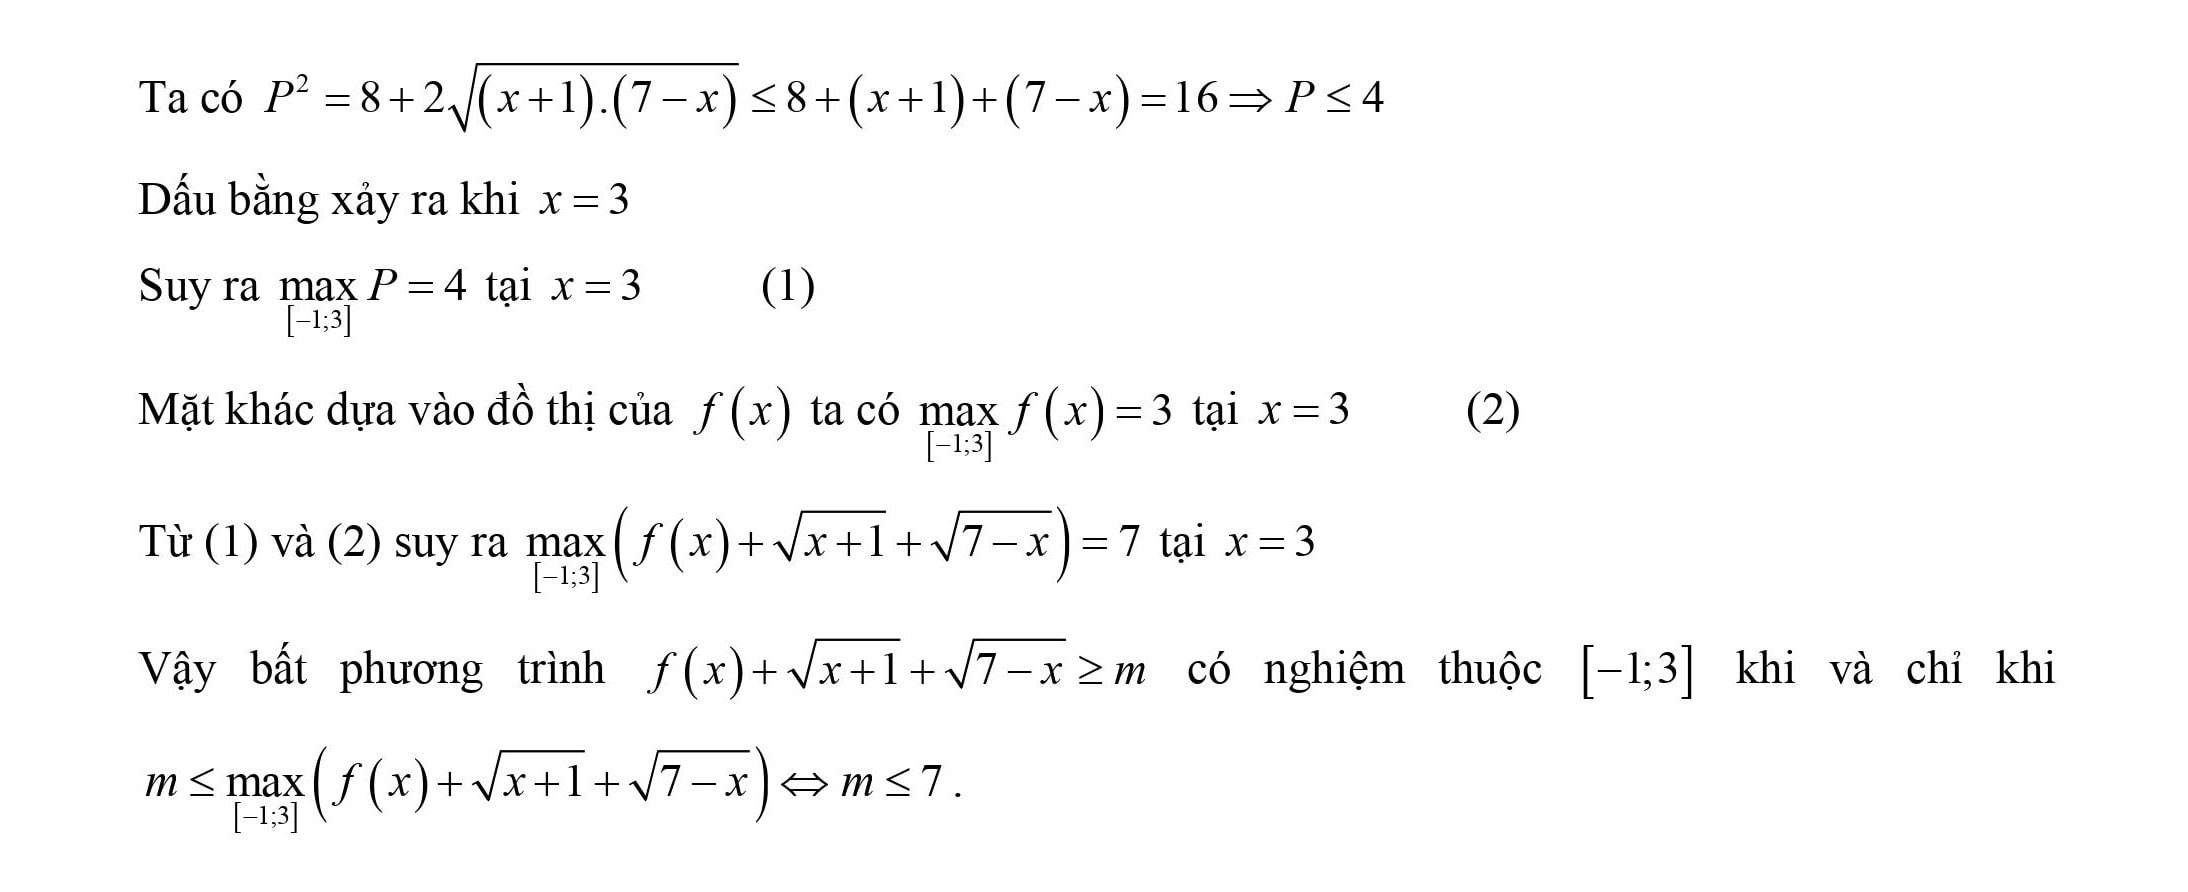 Tìm m để bất phương trình F(x;m) > 0, F(x;m) >= 0, F(x;m) < 0, F(x;m) =< 0 có nghiệm trên tập D 8